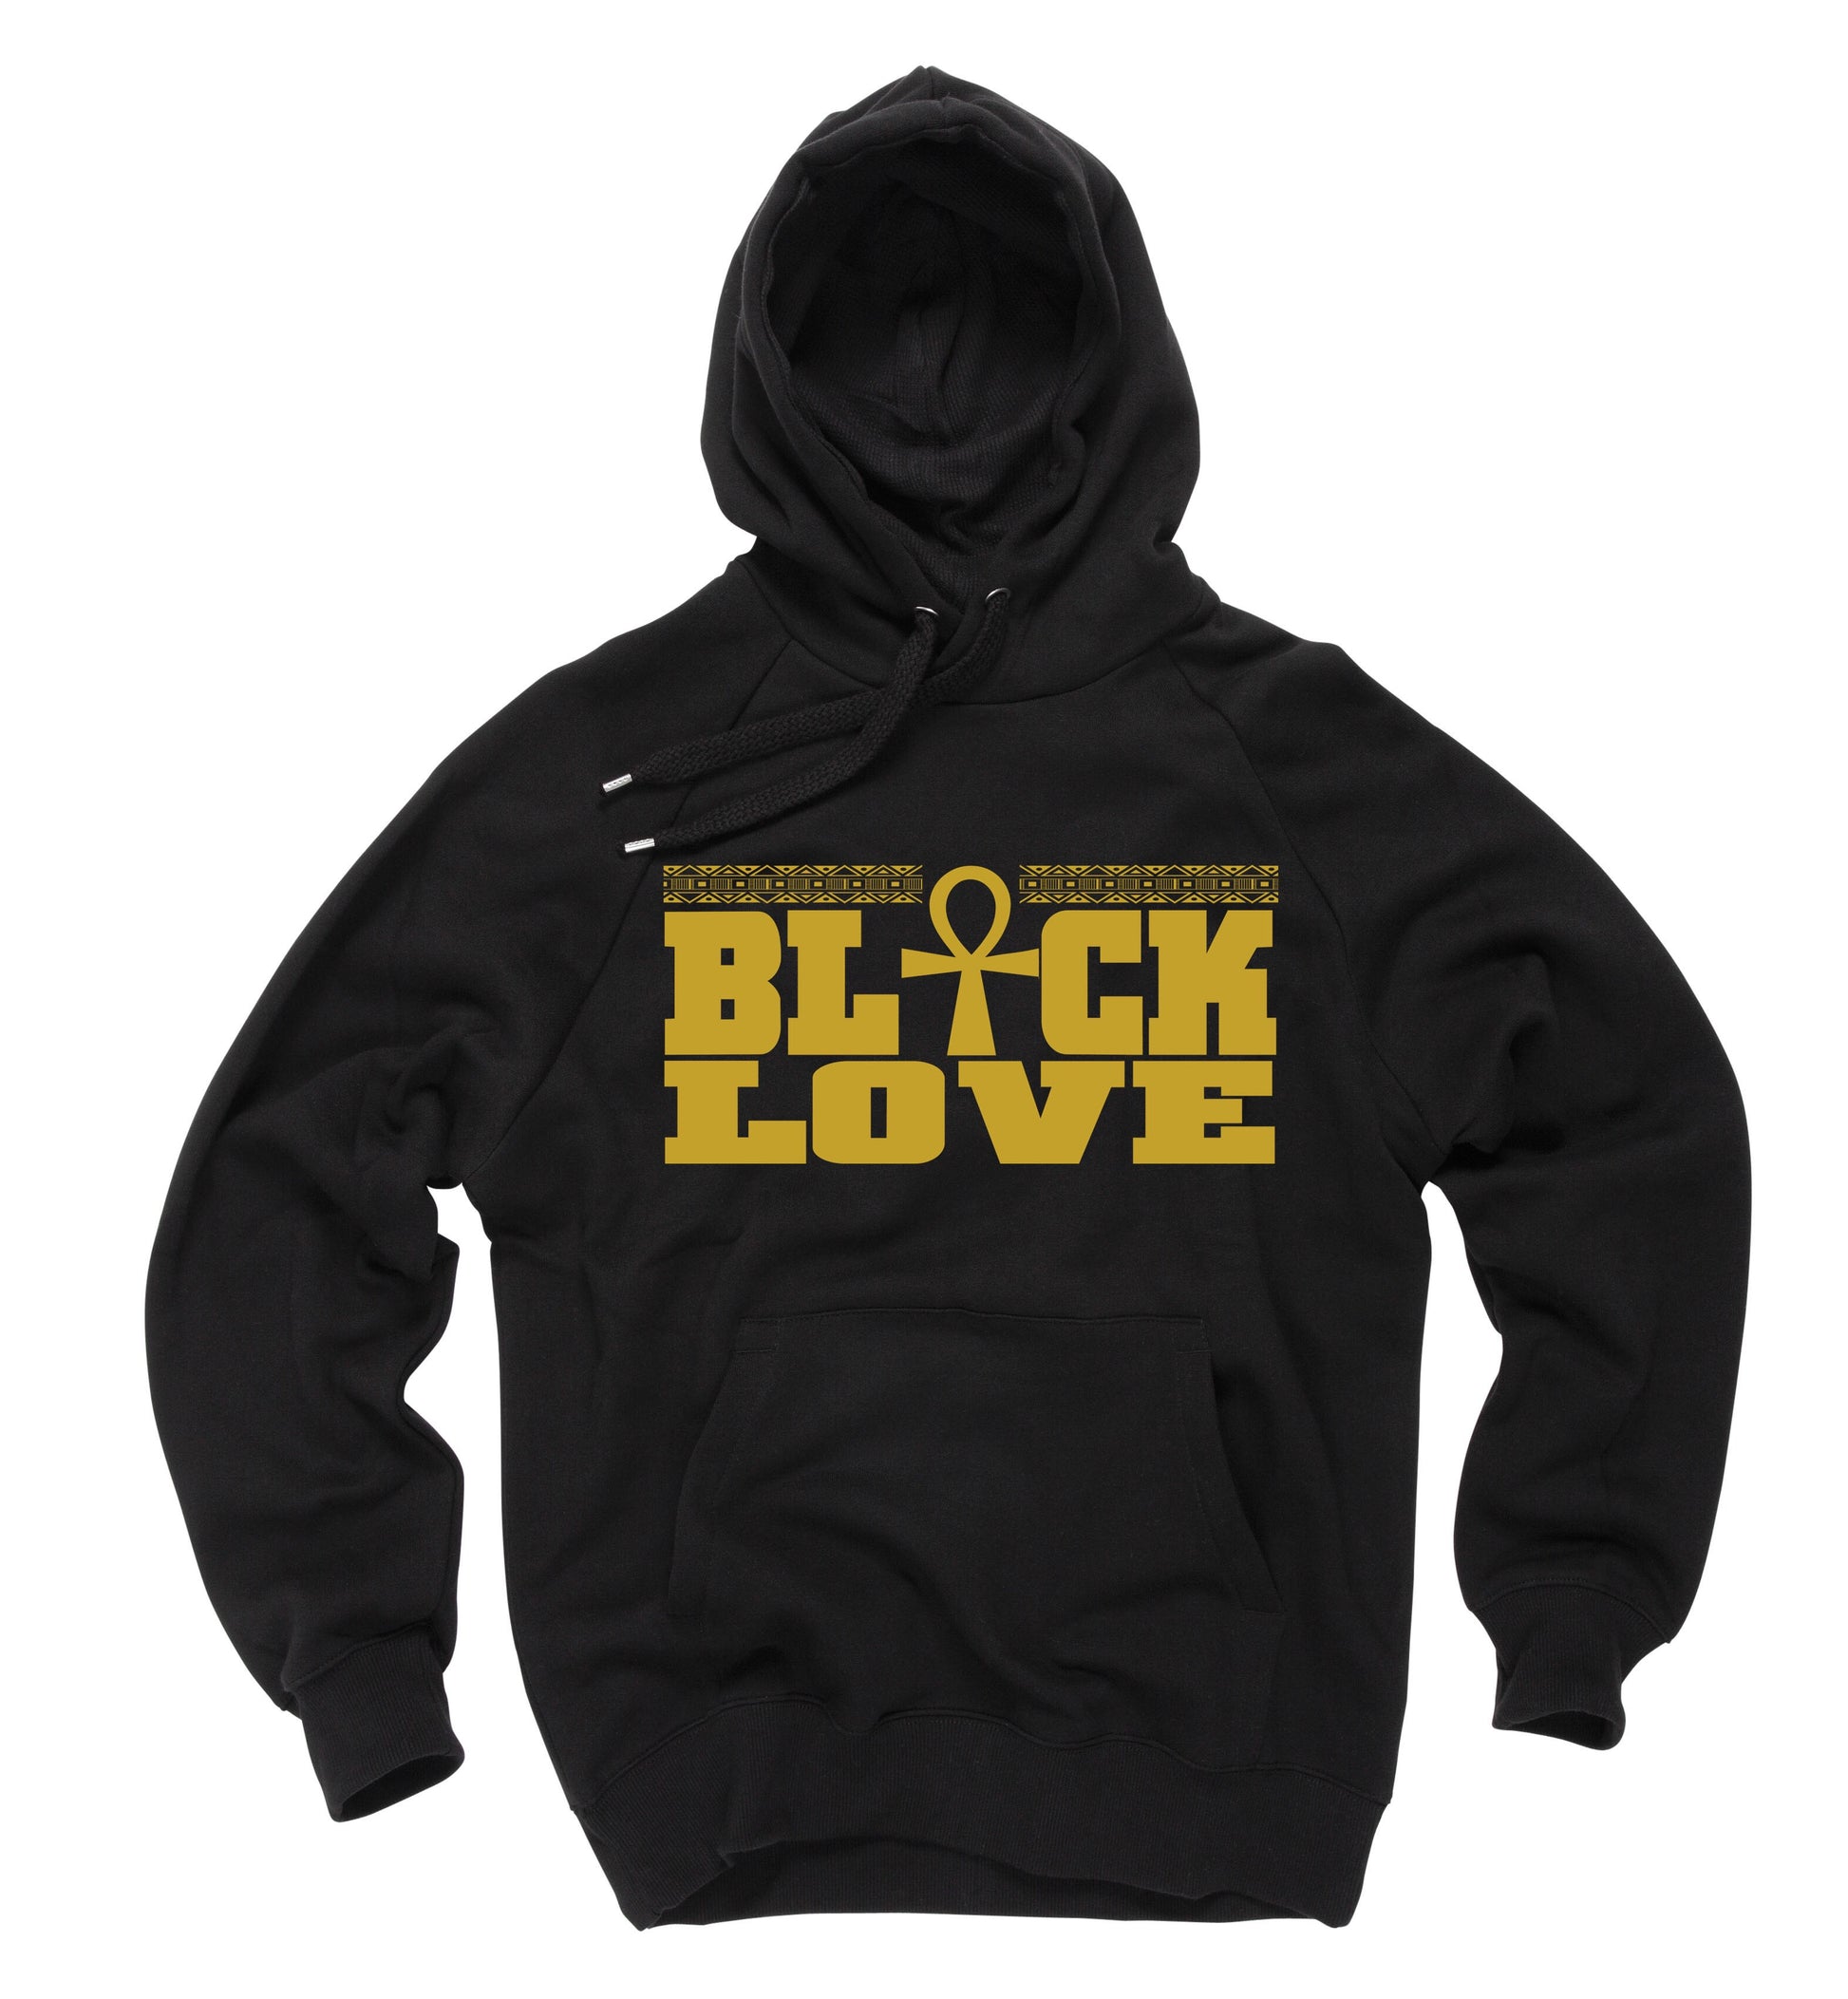 Black Love Hoodie - Black10.com